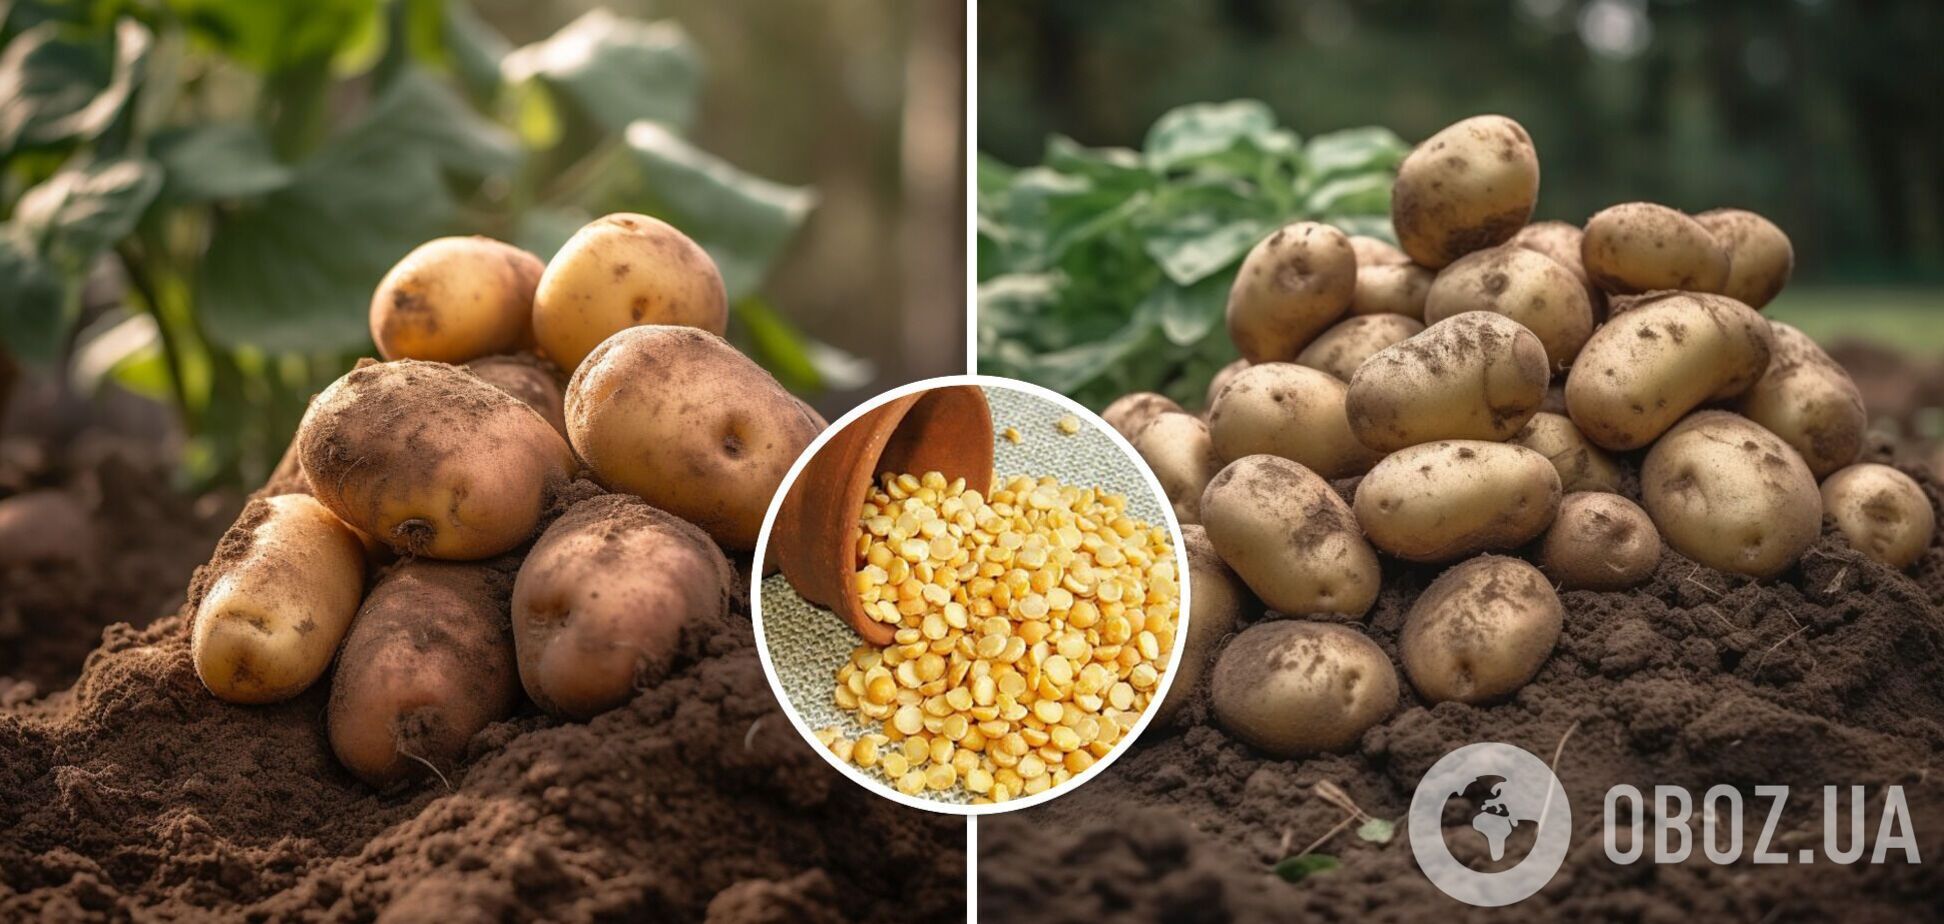 Картоплі буде більше, а жуків – менше: дачна хитрість для збільшення урожаю